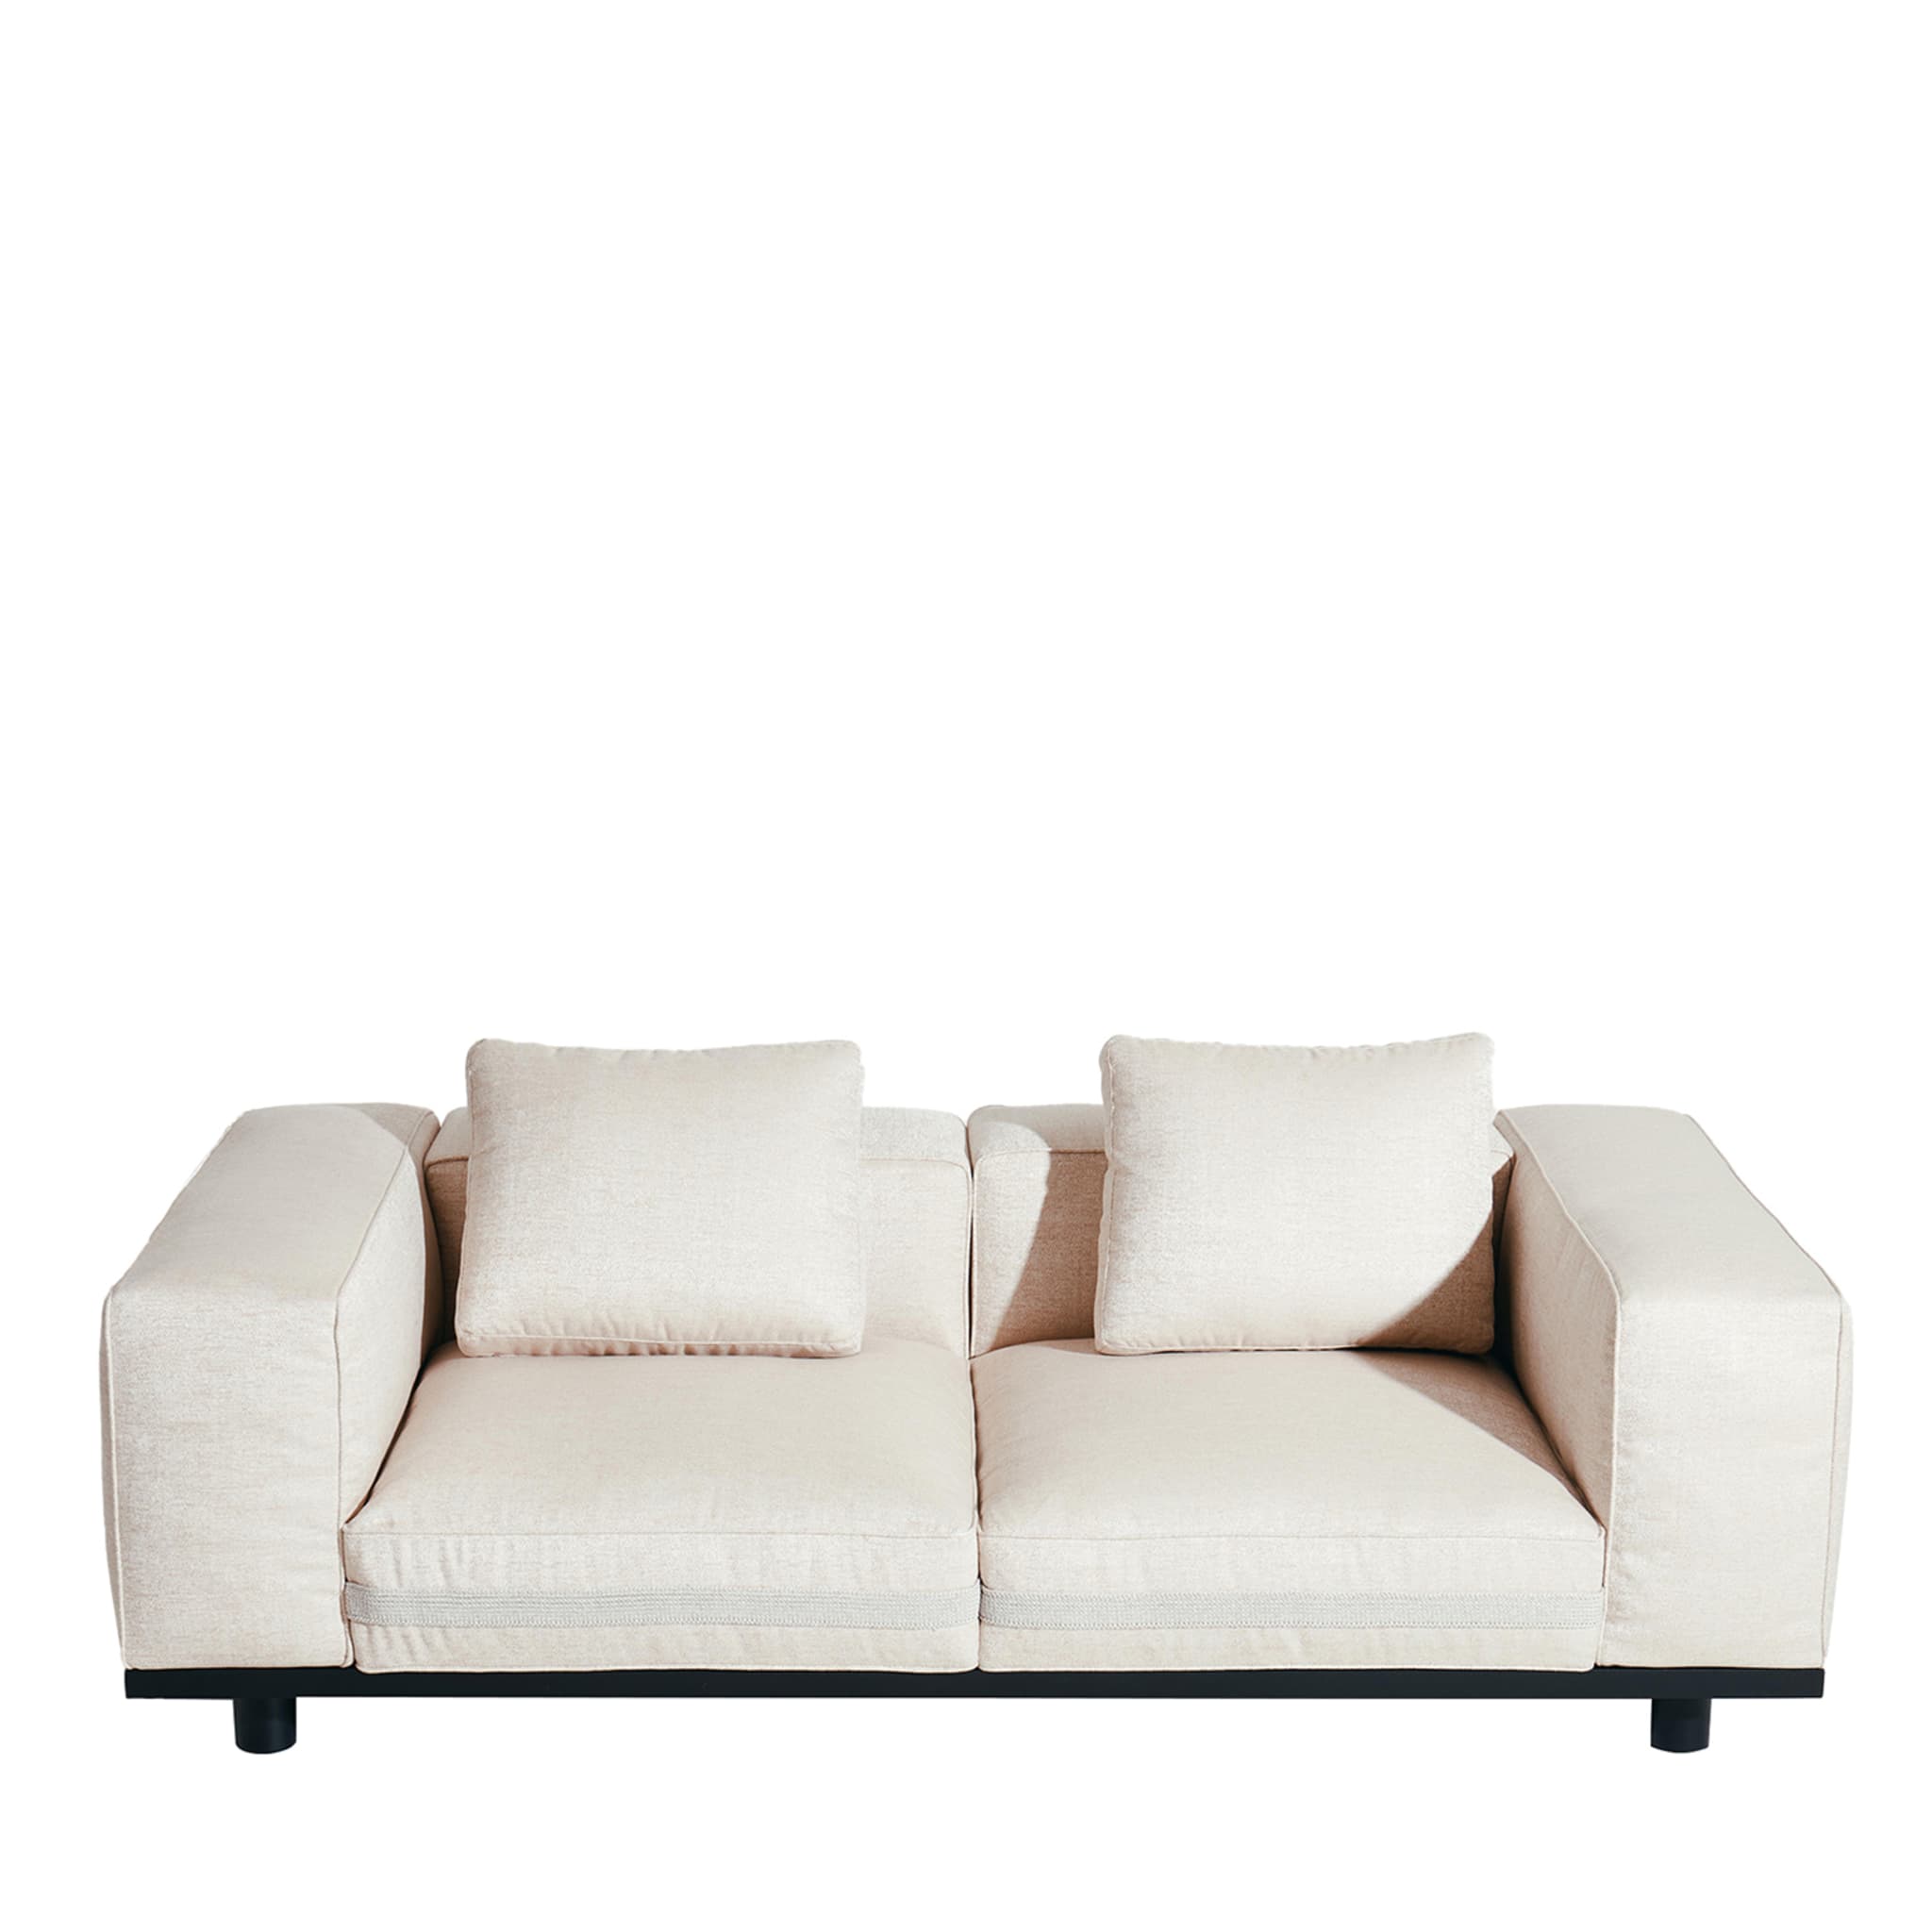 Saint Remy Weißes 2-Sitzer Sofa #1 von Luca Nichetto - Hauptansicht